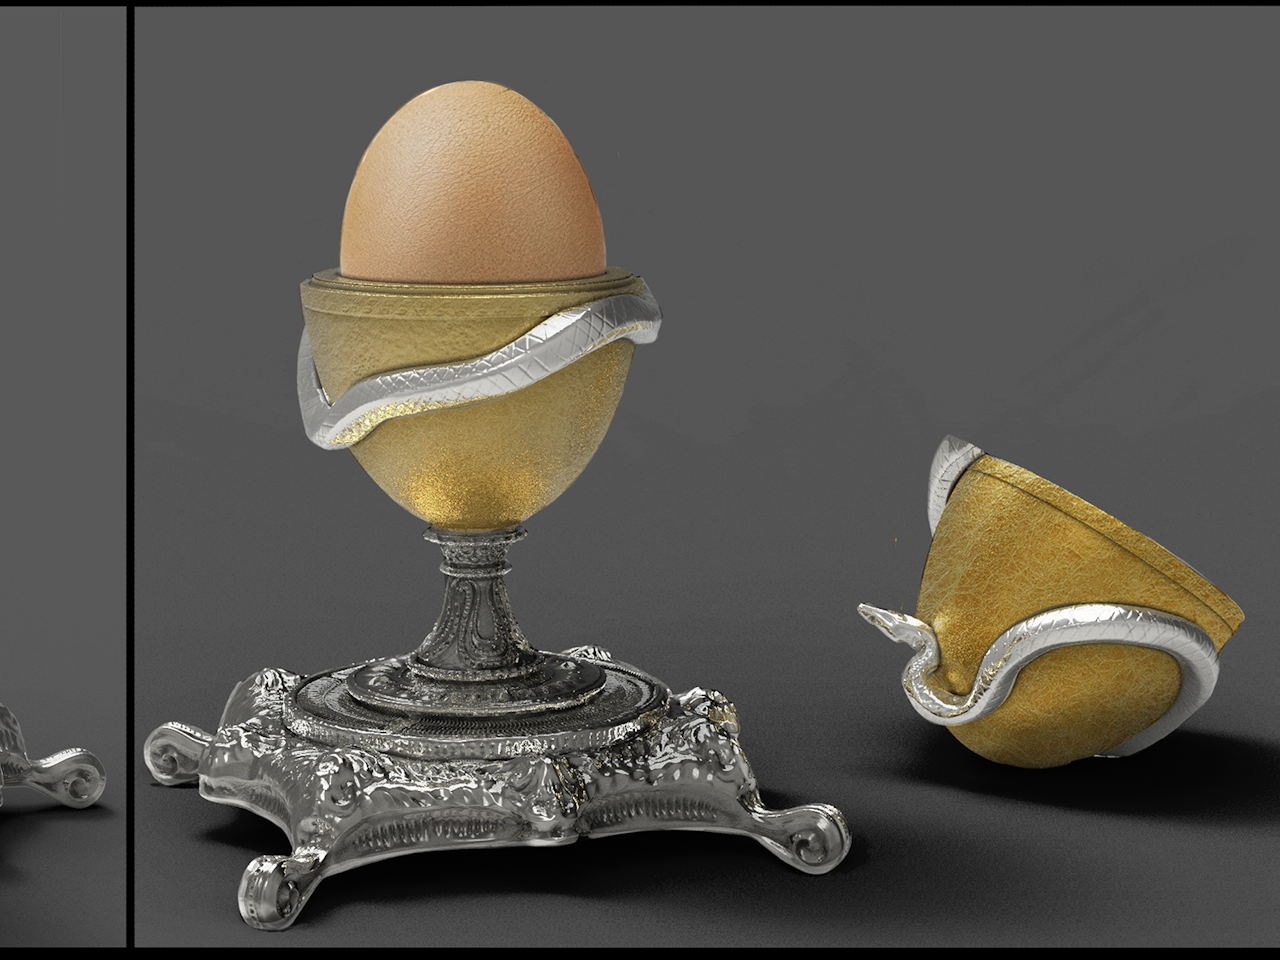 egg holder